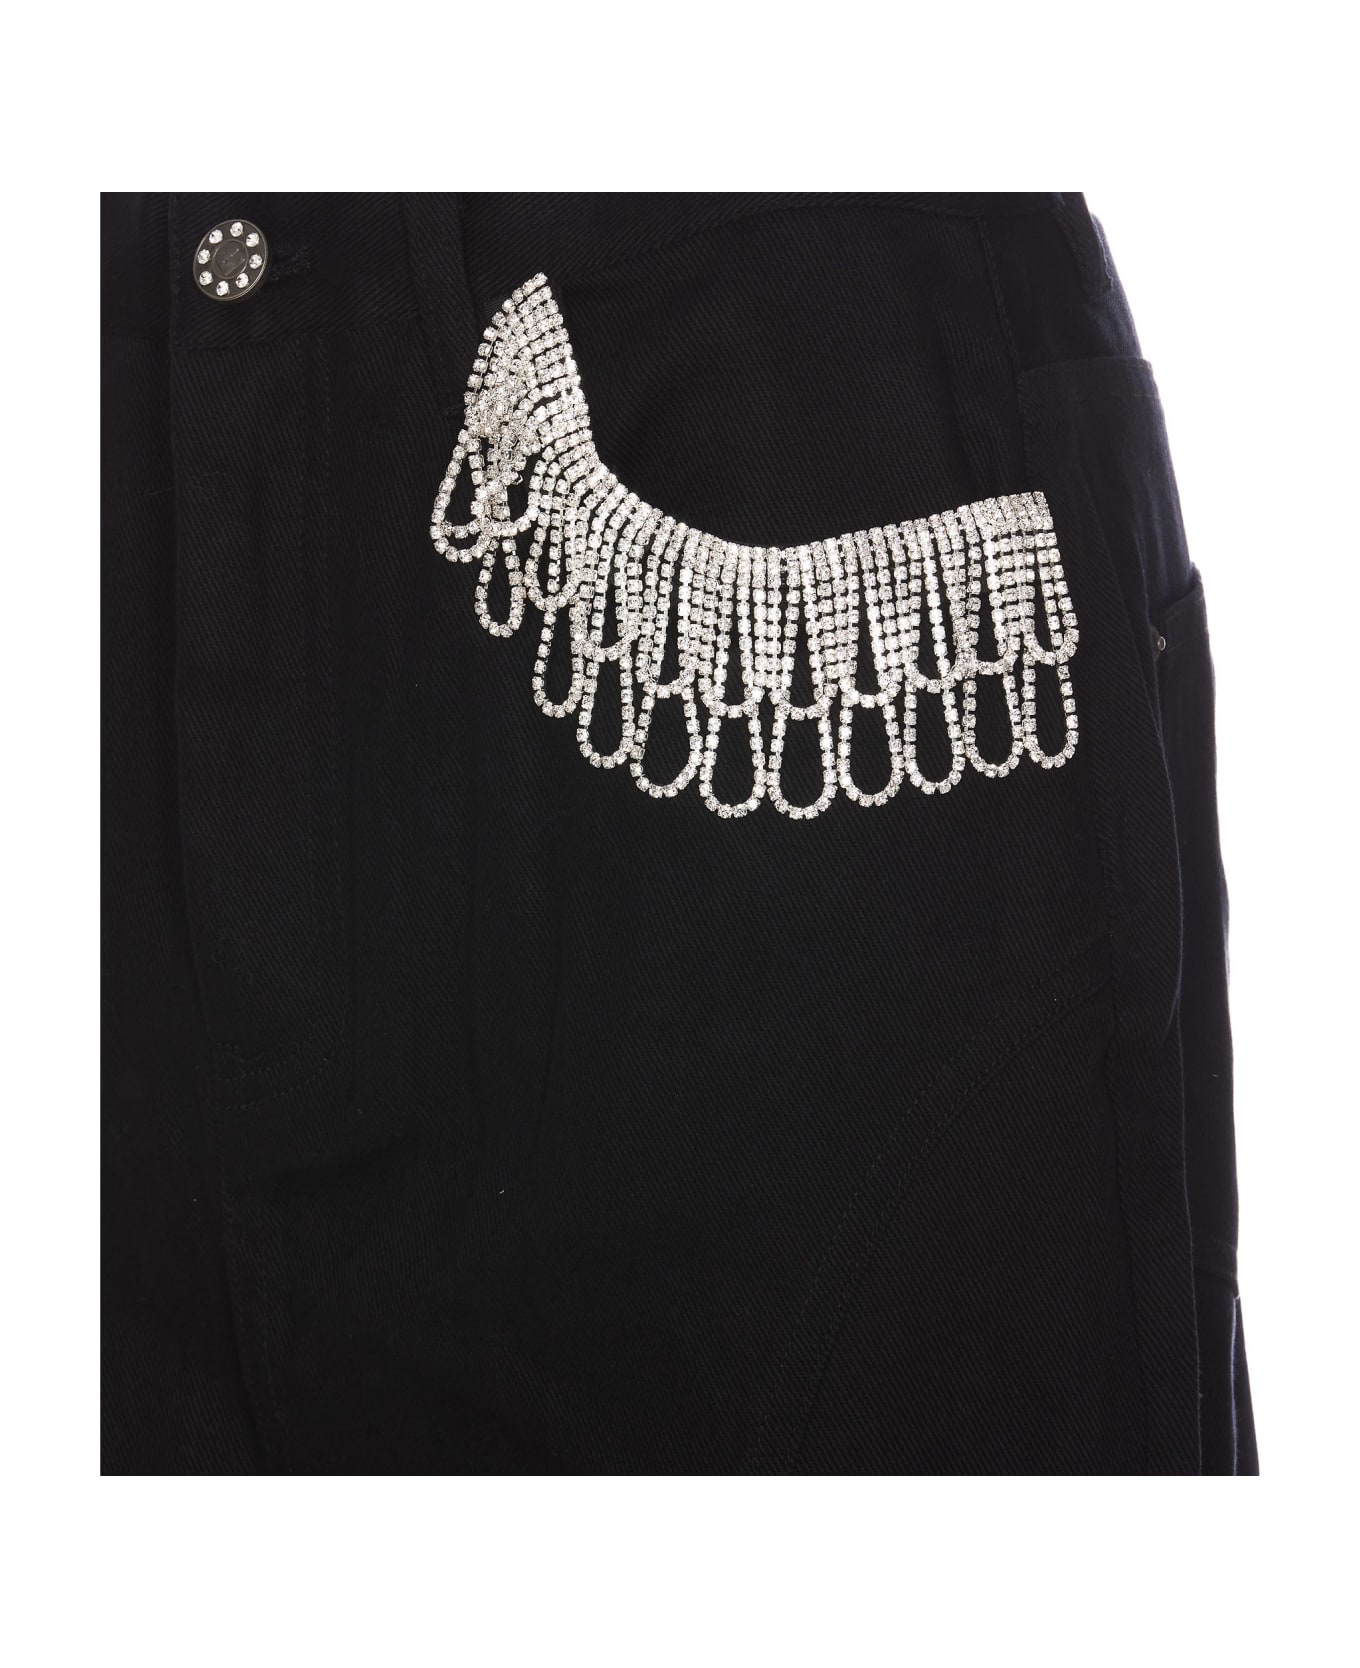 Rotate by Birger Christensen Maxi Denim Skirt - Black スカート